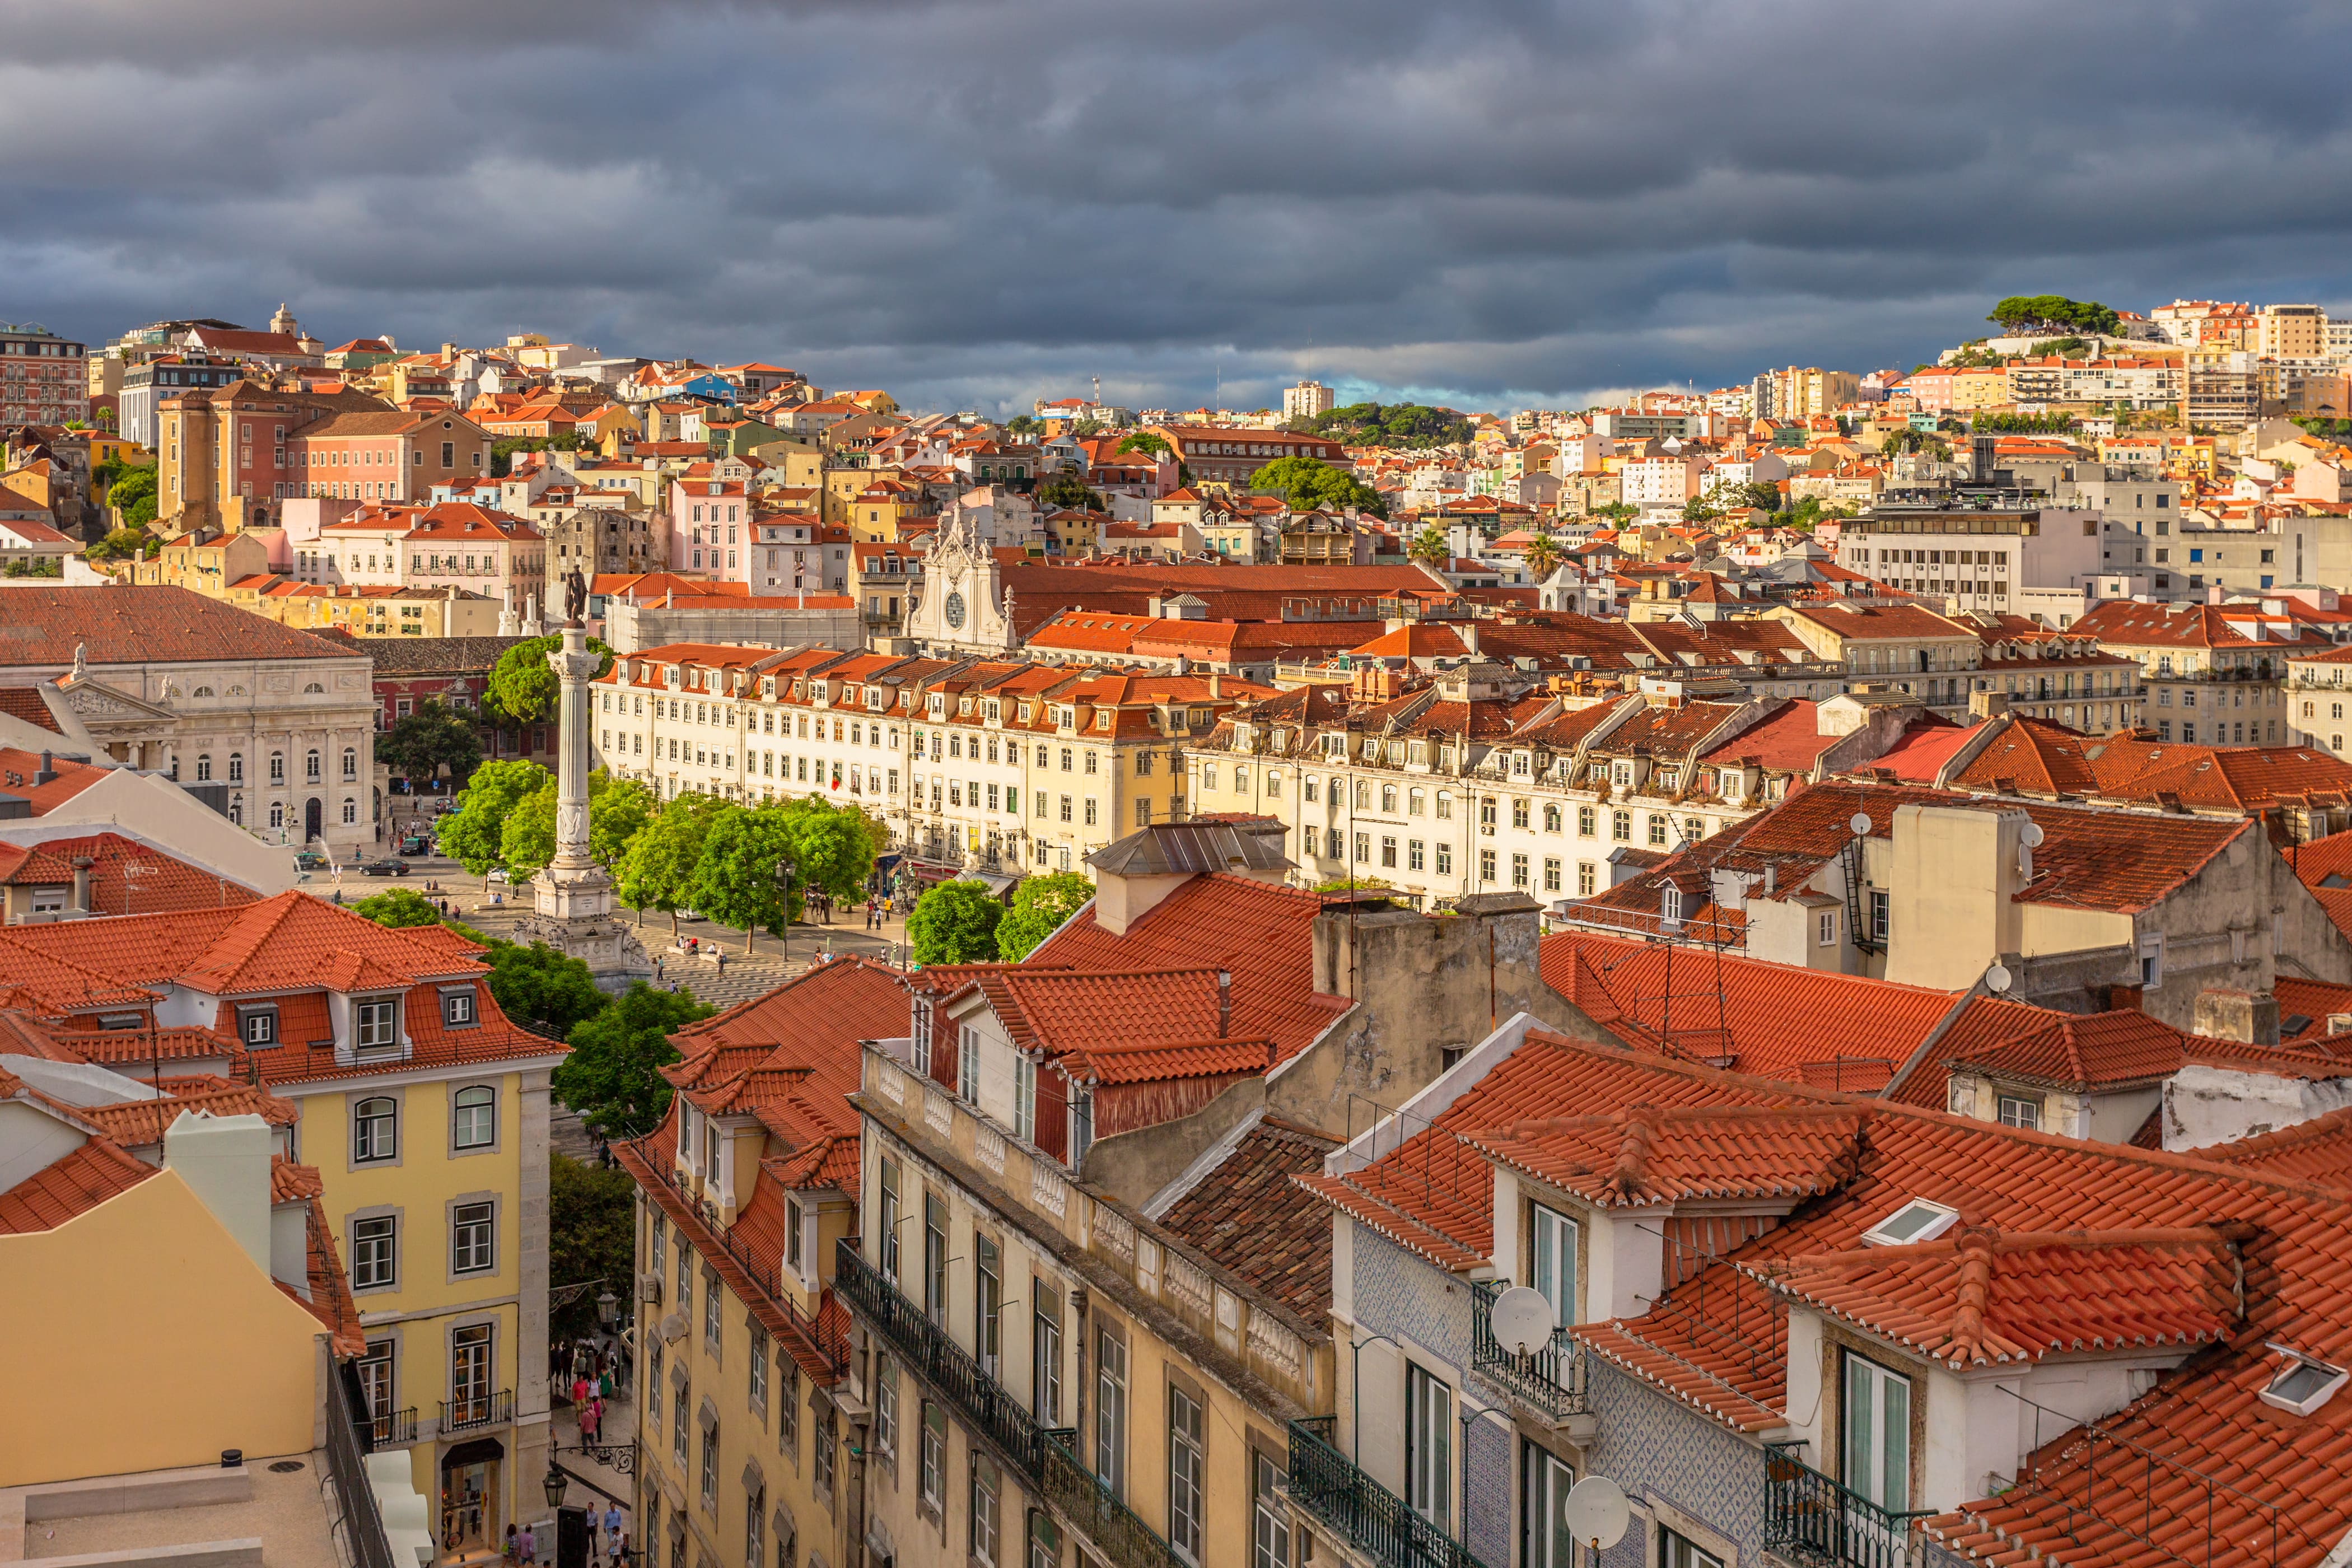 Vista para a praça rei pedro iv e ruas antigas do centro da cidade com casas de azulejos laranja lisboa portugal